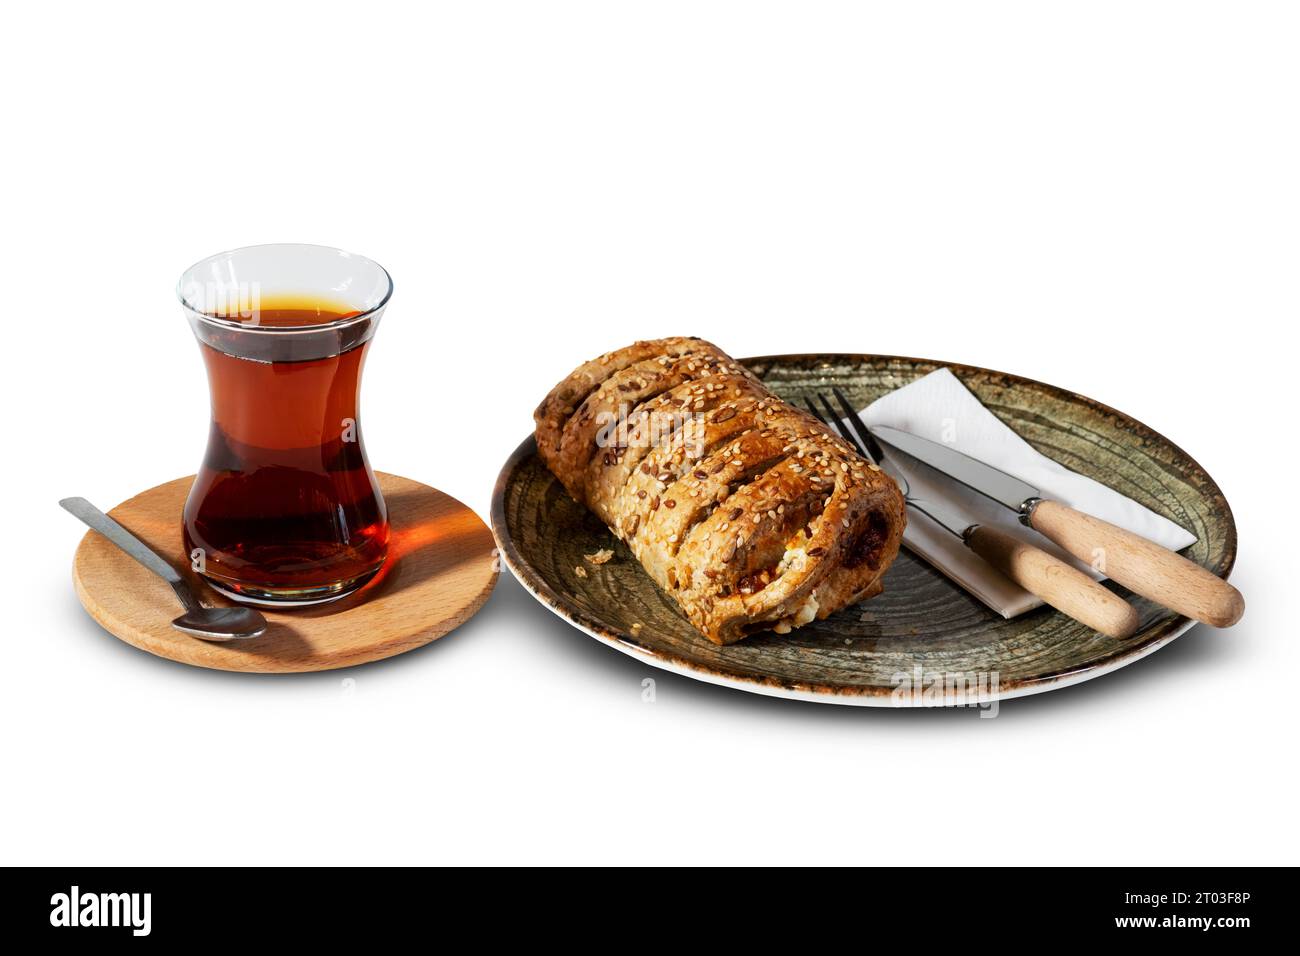 Un moment de délice turc avec une pâtisserie au sésame, accompagnée d'un verre chaleureux et accueillant de thé turc traditionnel. Découvrez l'authentique, hom Banque D'Images